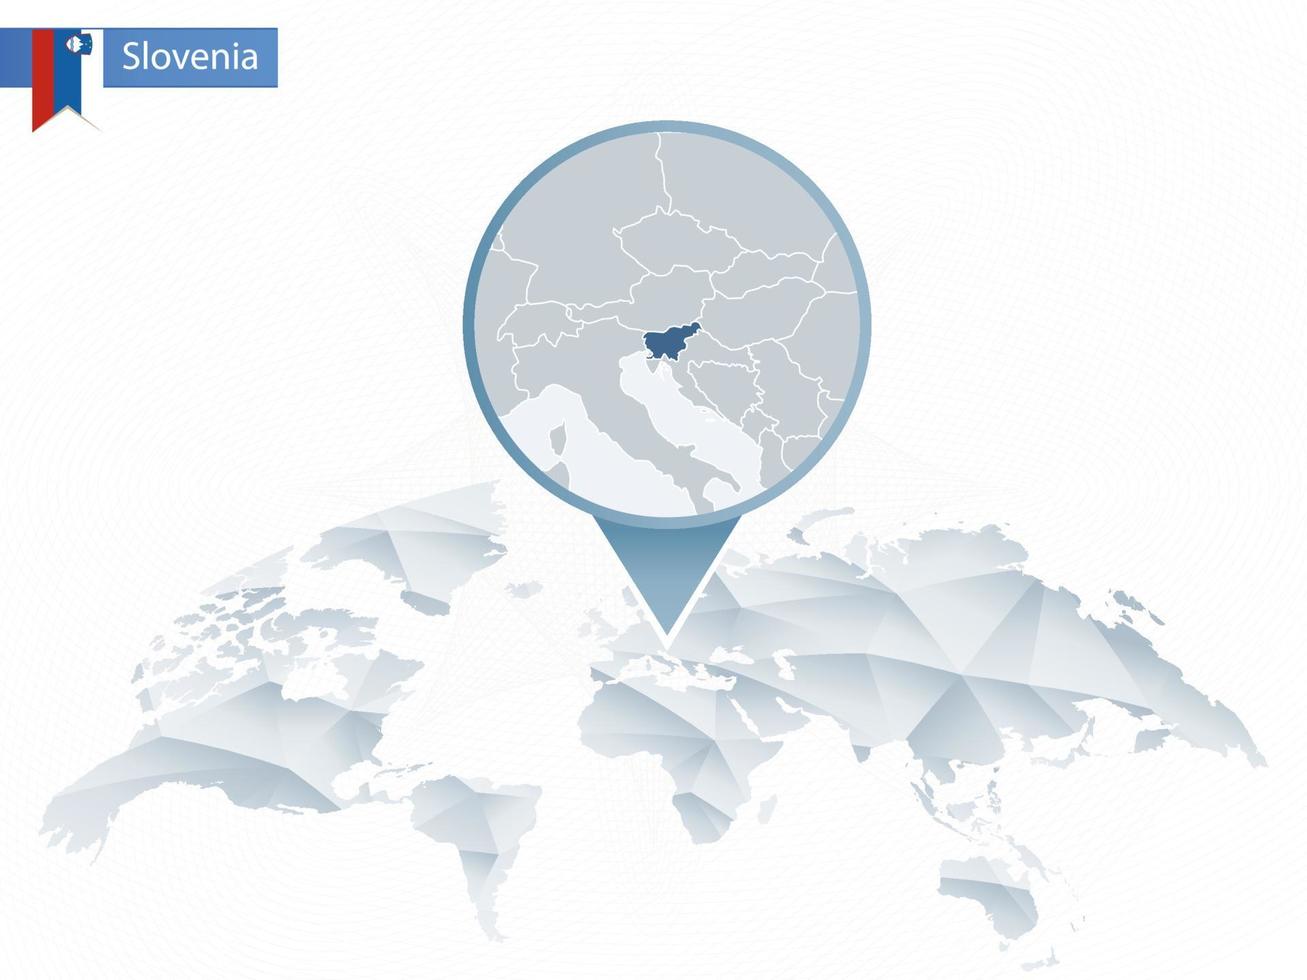 carte du monde arrondie abstraite avec carte détaillée de la slovénie épinglée. vecteur